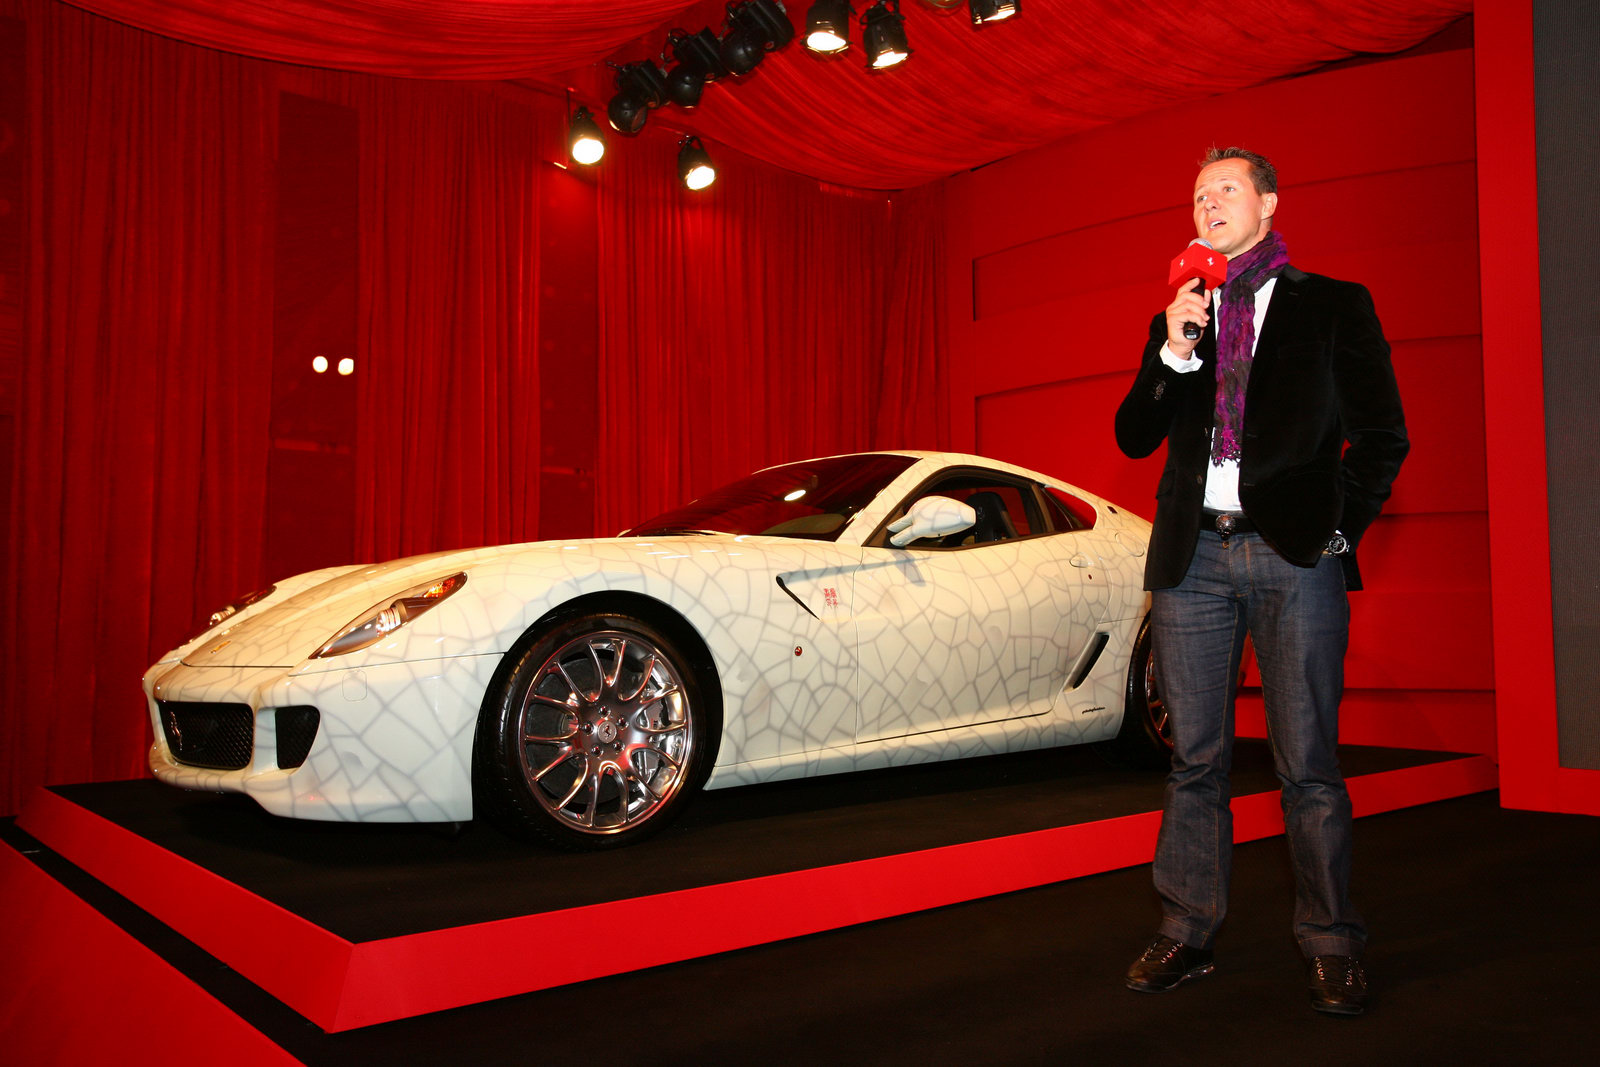 Ferrari раскрашенный под вазу продали за 1,2 млн. евро